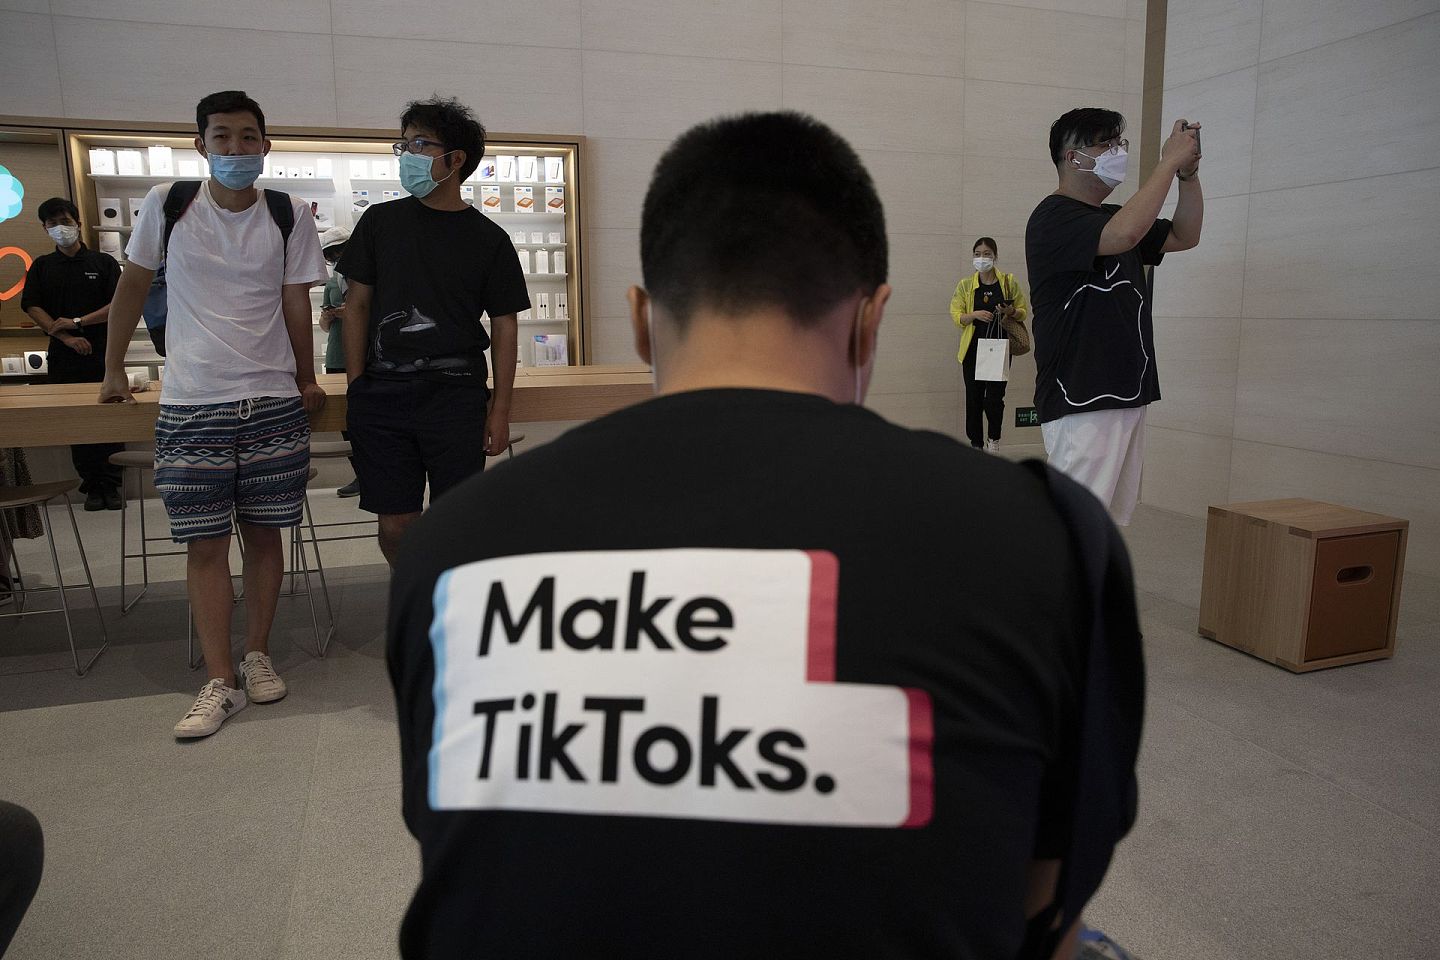 美国“封杀”TikTok：短片分享应用程式TikTok最近成为中美角力中备受冲击的对象。2019年美国已就其母公司字节跳动收购美国社交应用程式Muscial.ly对国家安全影响进行检视。图为7月17日一名男子穿上宣传TikTok字句的汗衫，坐在位于北京的苹果公司门市内。（AP）